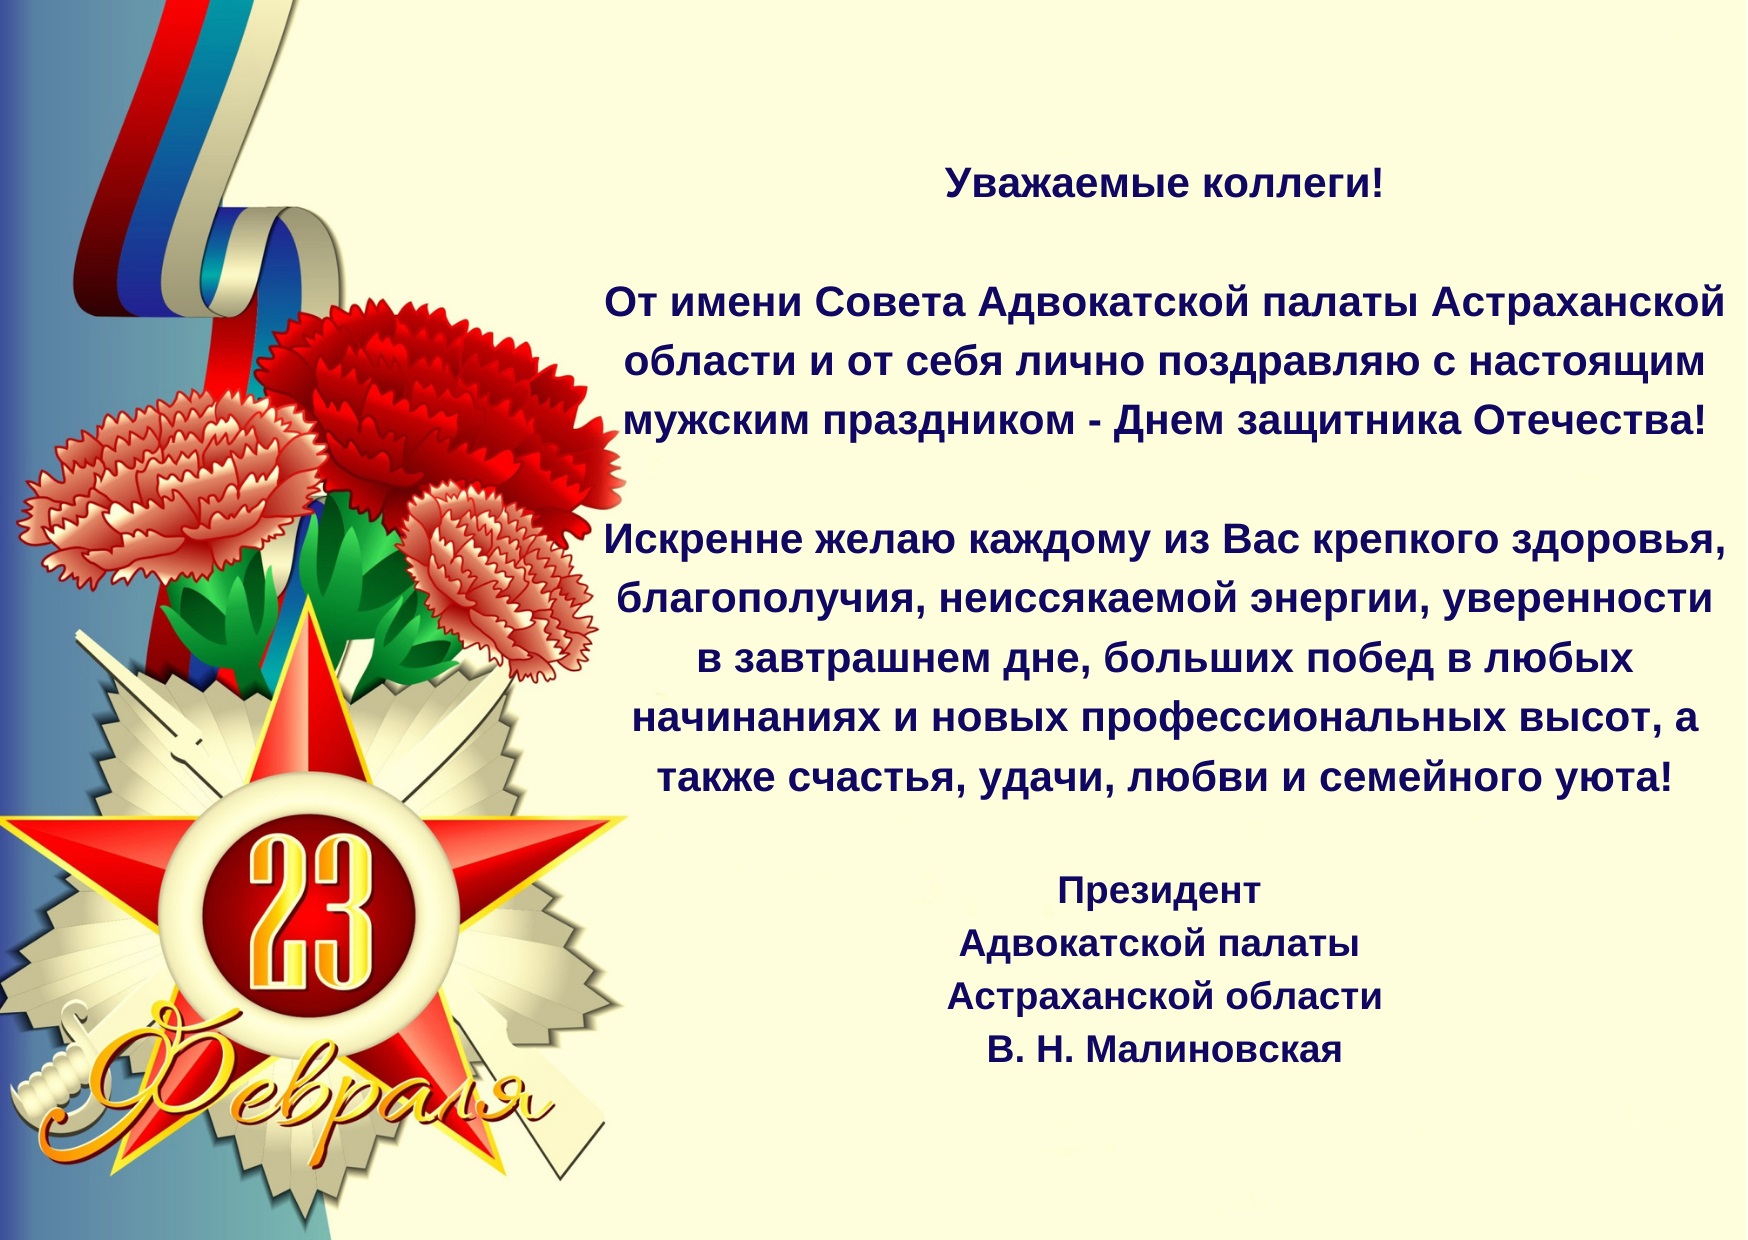 Поздравления Президента АПАО Малиновской В.Н.